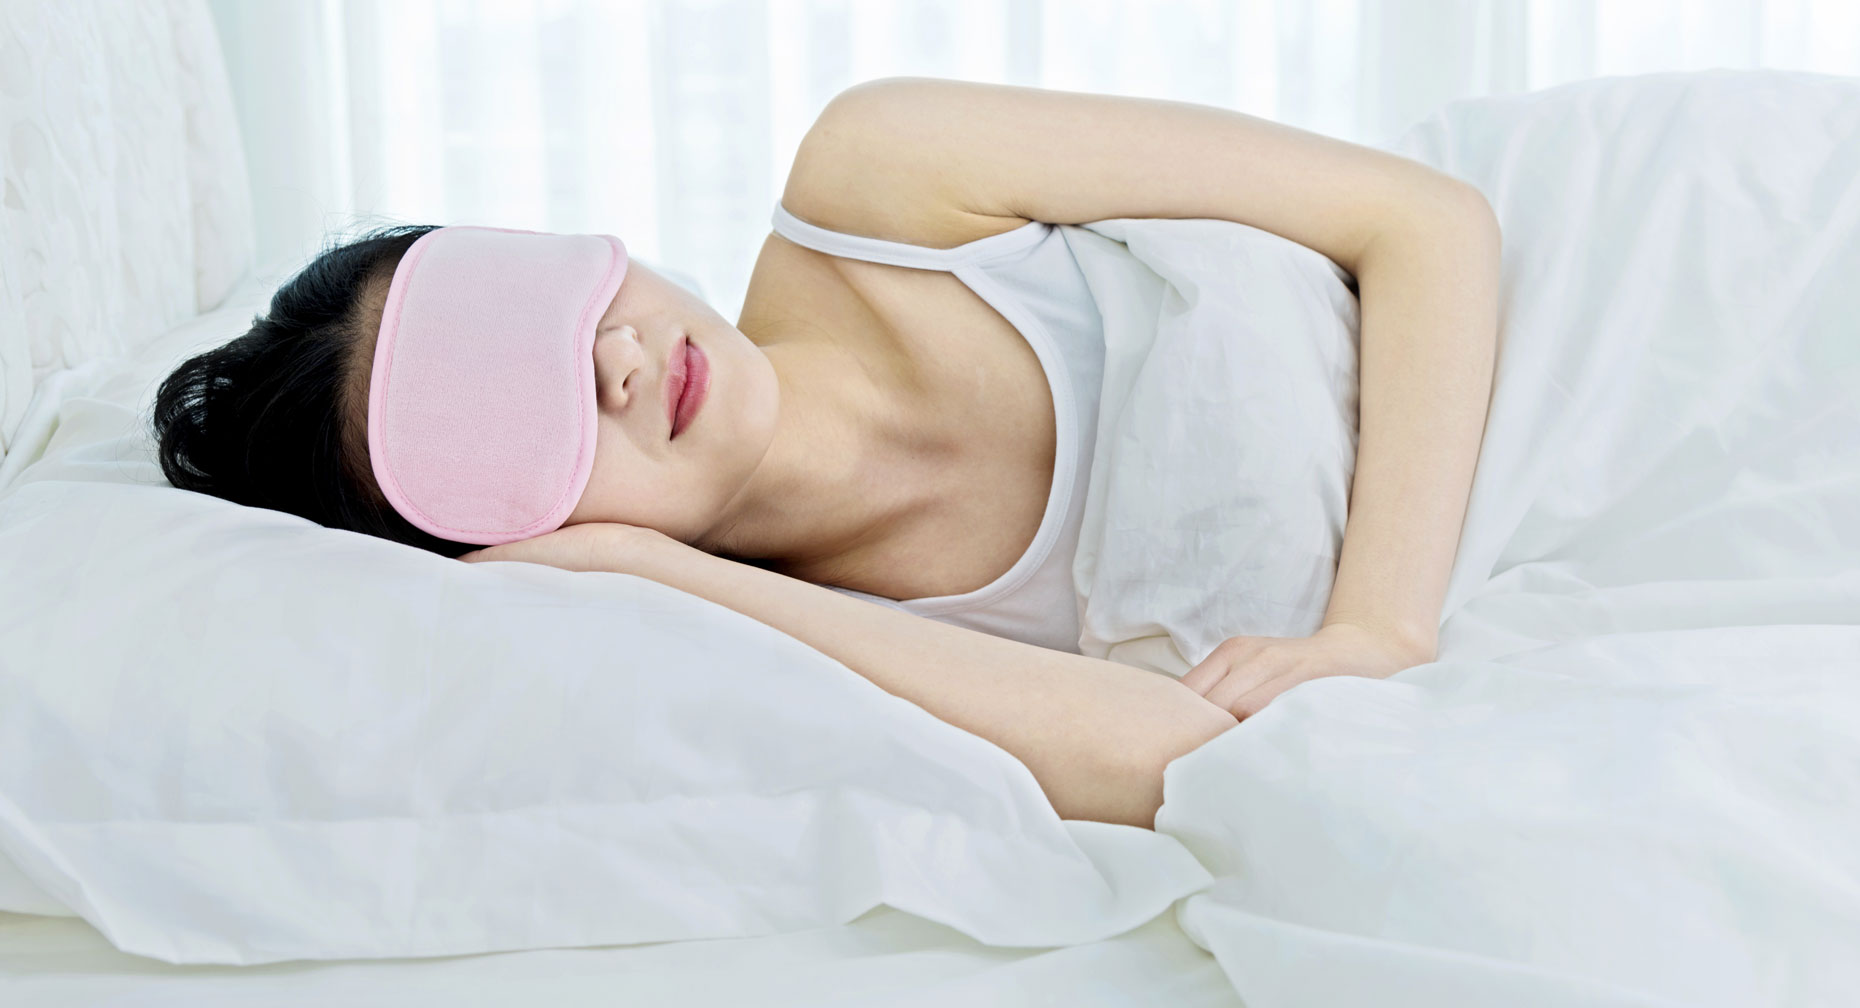 Chăm sóc giấc ngủ giúp tái tạo năng lượng hiệu quả